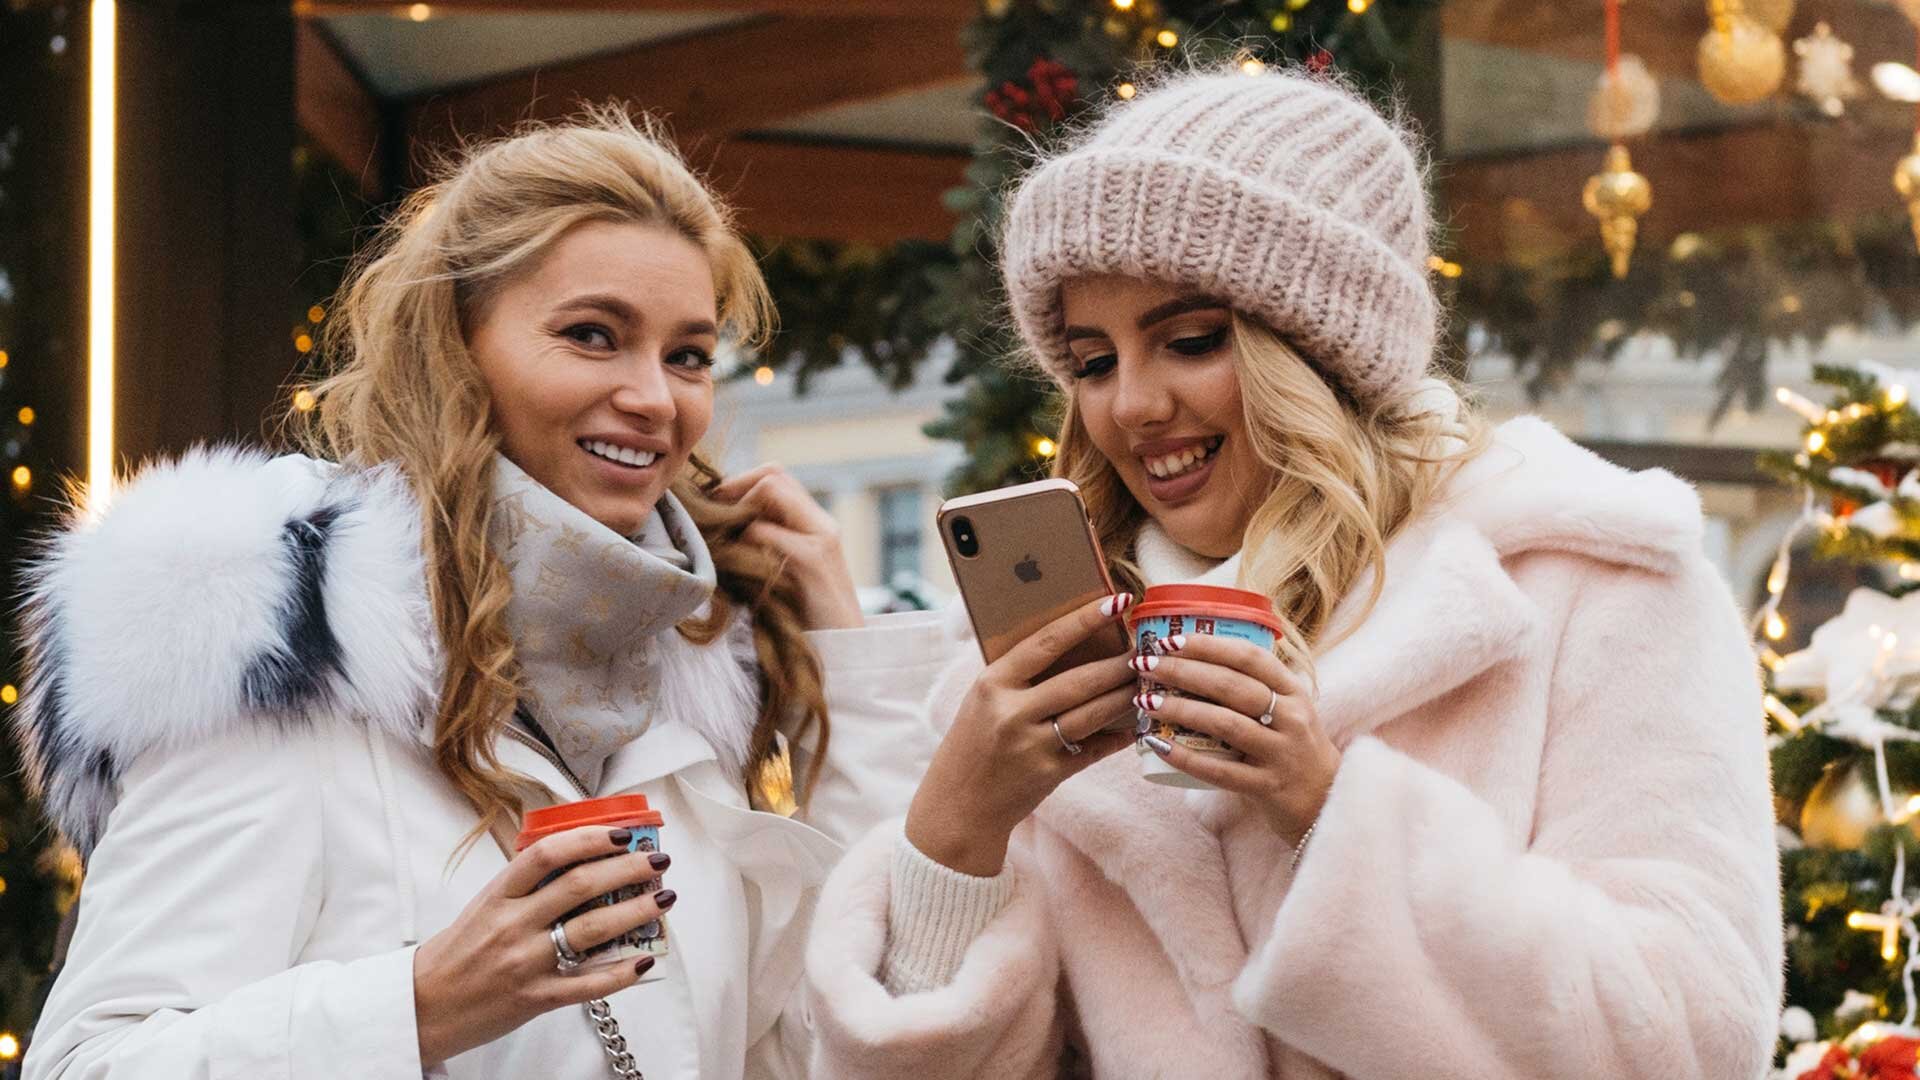 Minnesota-Instagram-Influencers-Prepare-for-'Hot-Girl-Winter'.jpg